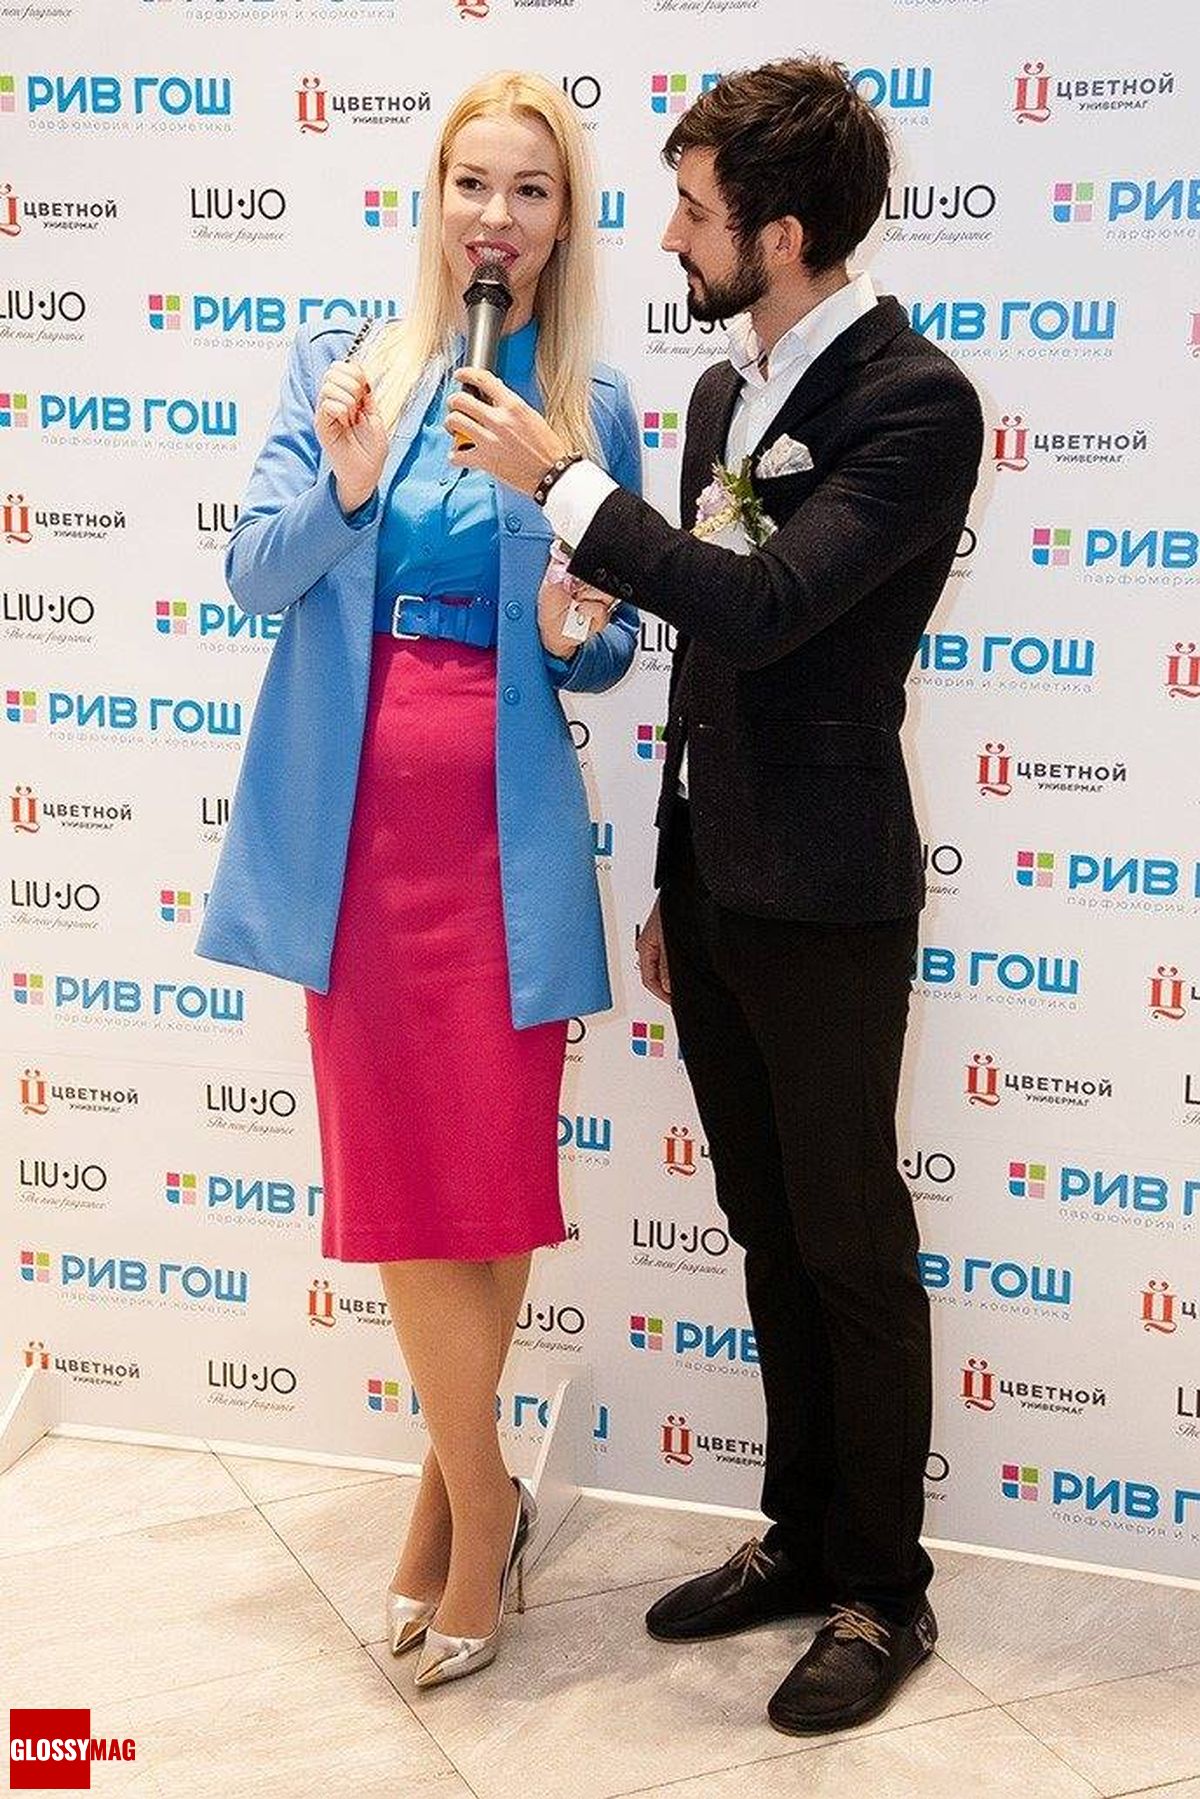 Малена Маяковская на эксклюзивной премьере парфюмерного бренда Liu Jo в Рив Гош «Цветной», 9 апреля 2015 г.